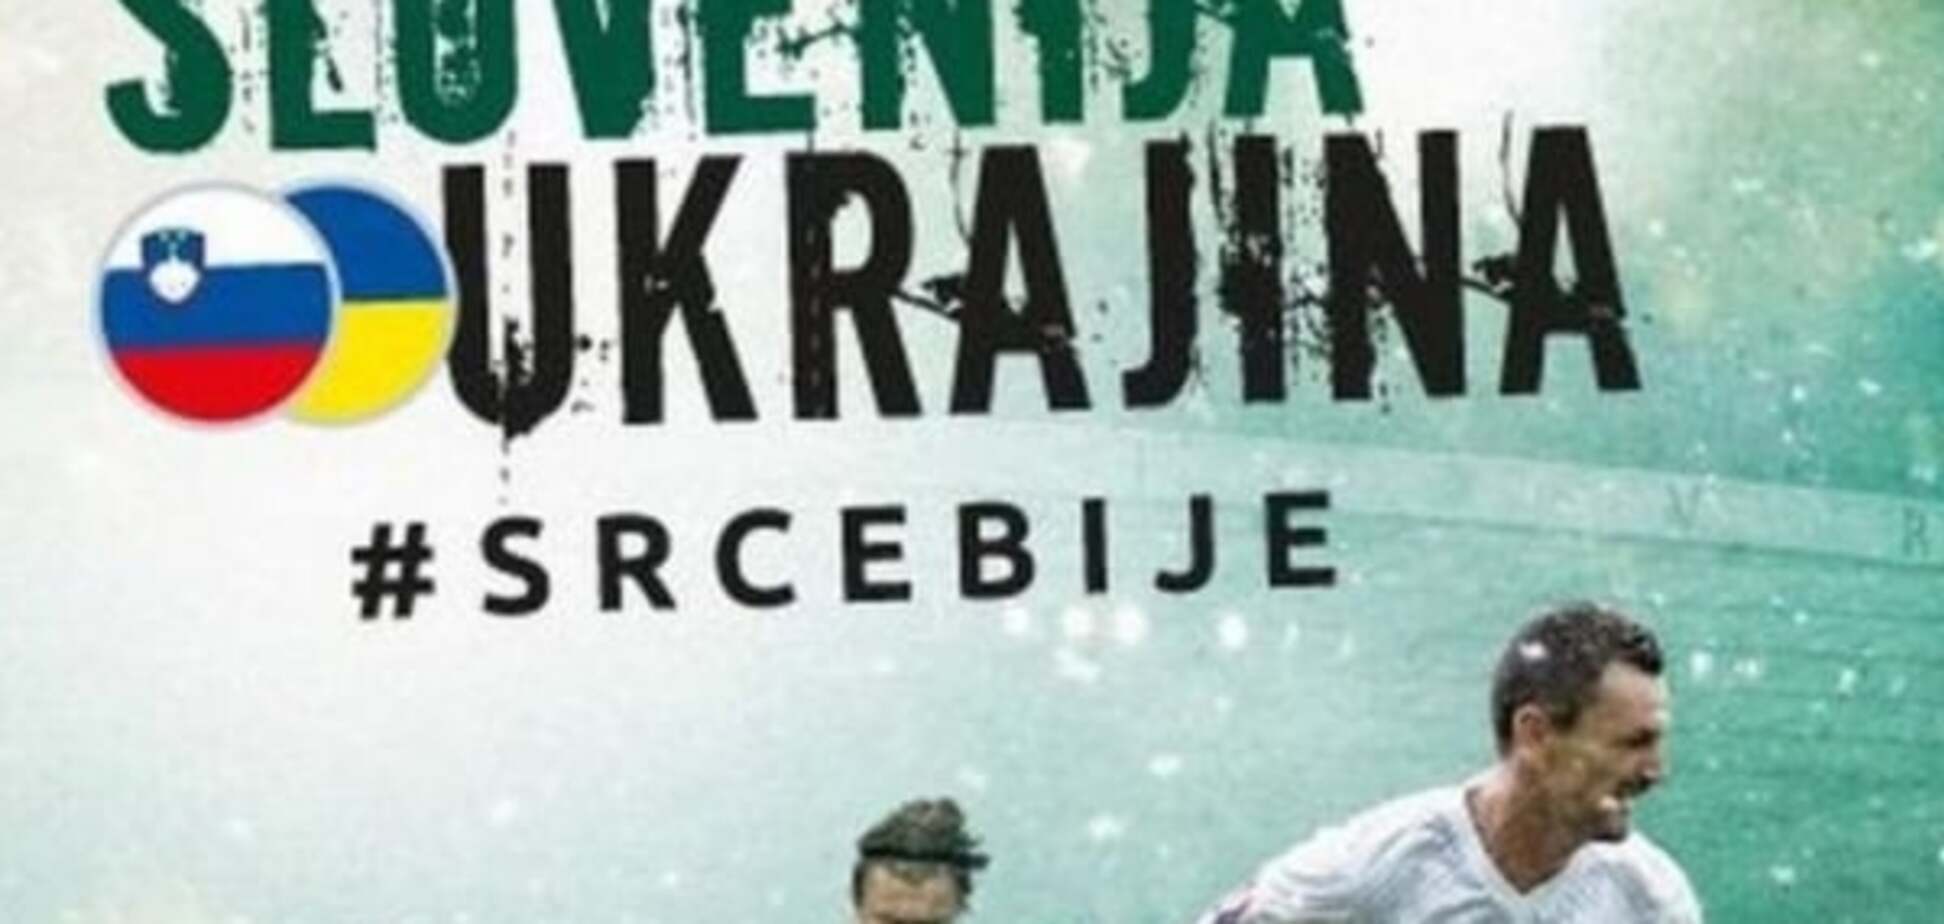 'Це ідіотизм!': Вболівальники обіцяють напівпорожні трибуни на грі Словенія - Україна